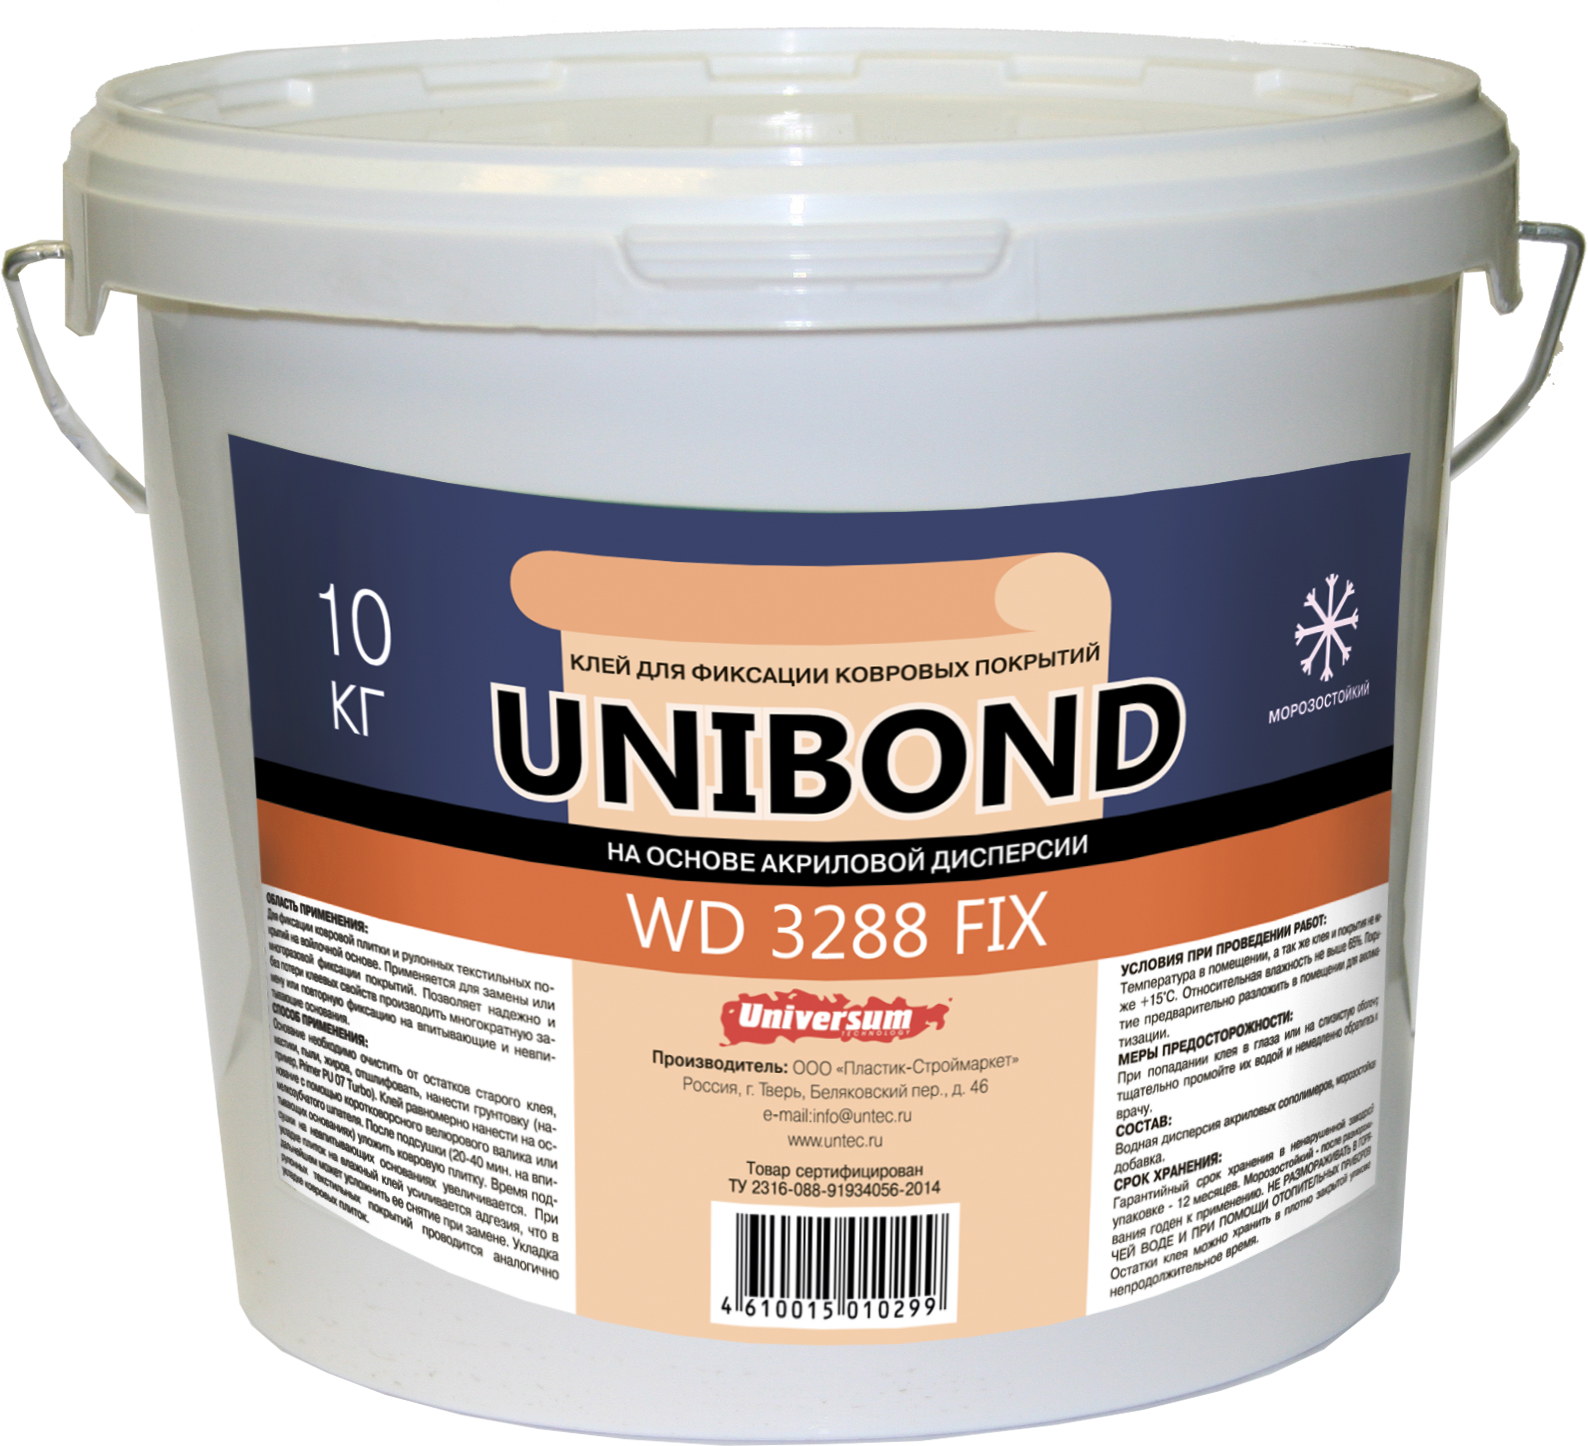 UNIBOND WD 3288 FIX Клей на основе акриловой дисперсии для ковровой плитки и рулонных текстильных покрытий на войлочной основе 